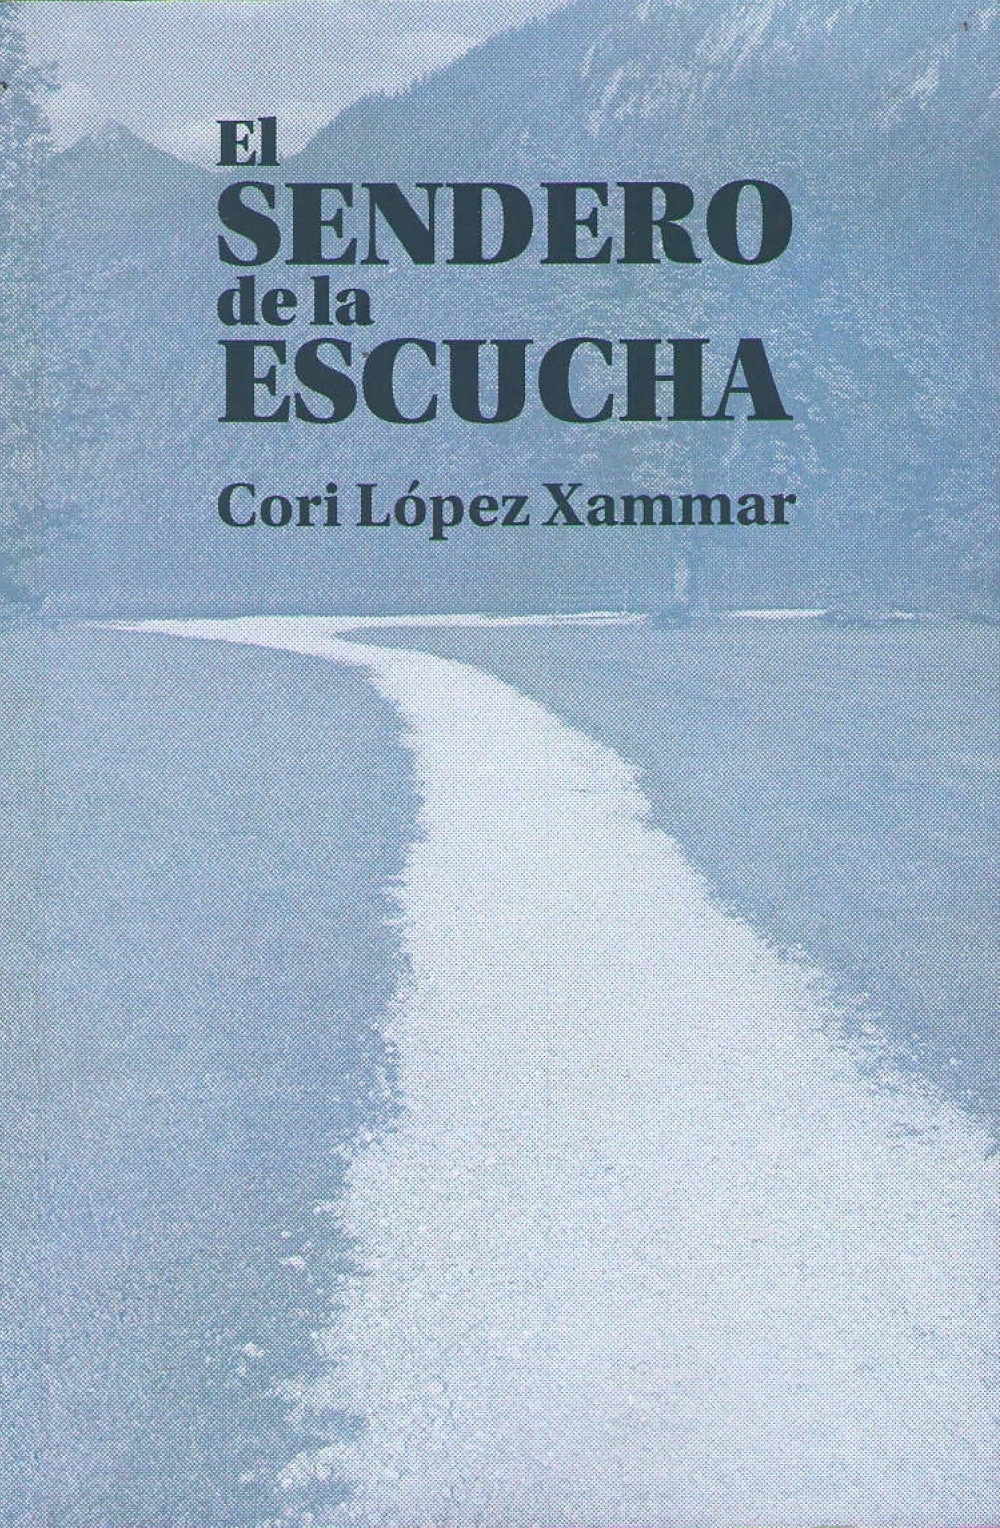  - Dra.Cori López Xammar